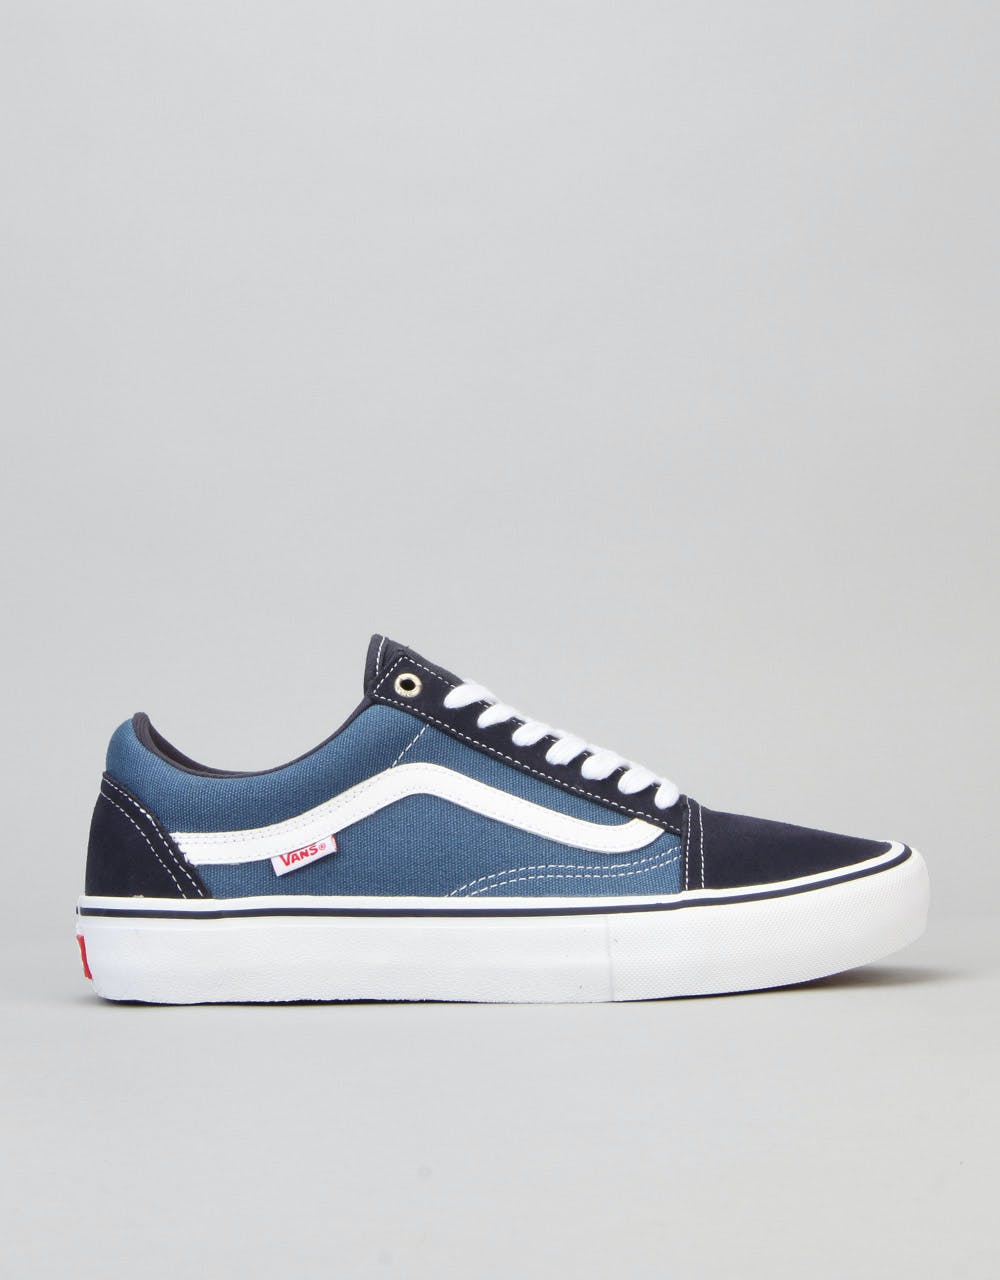 Vans Old Skool Pro Skate Shoes - Navy/Stv Navy/White